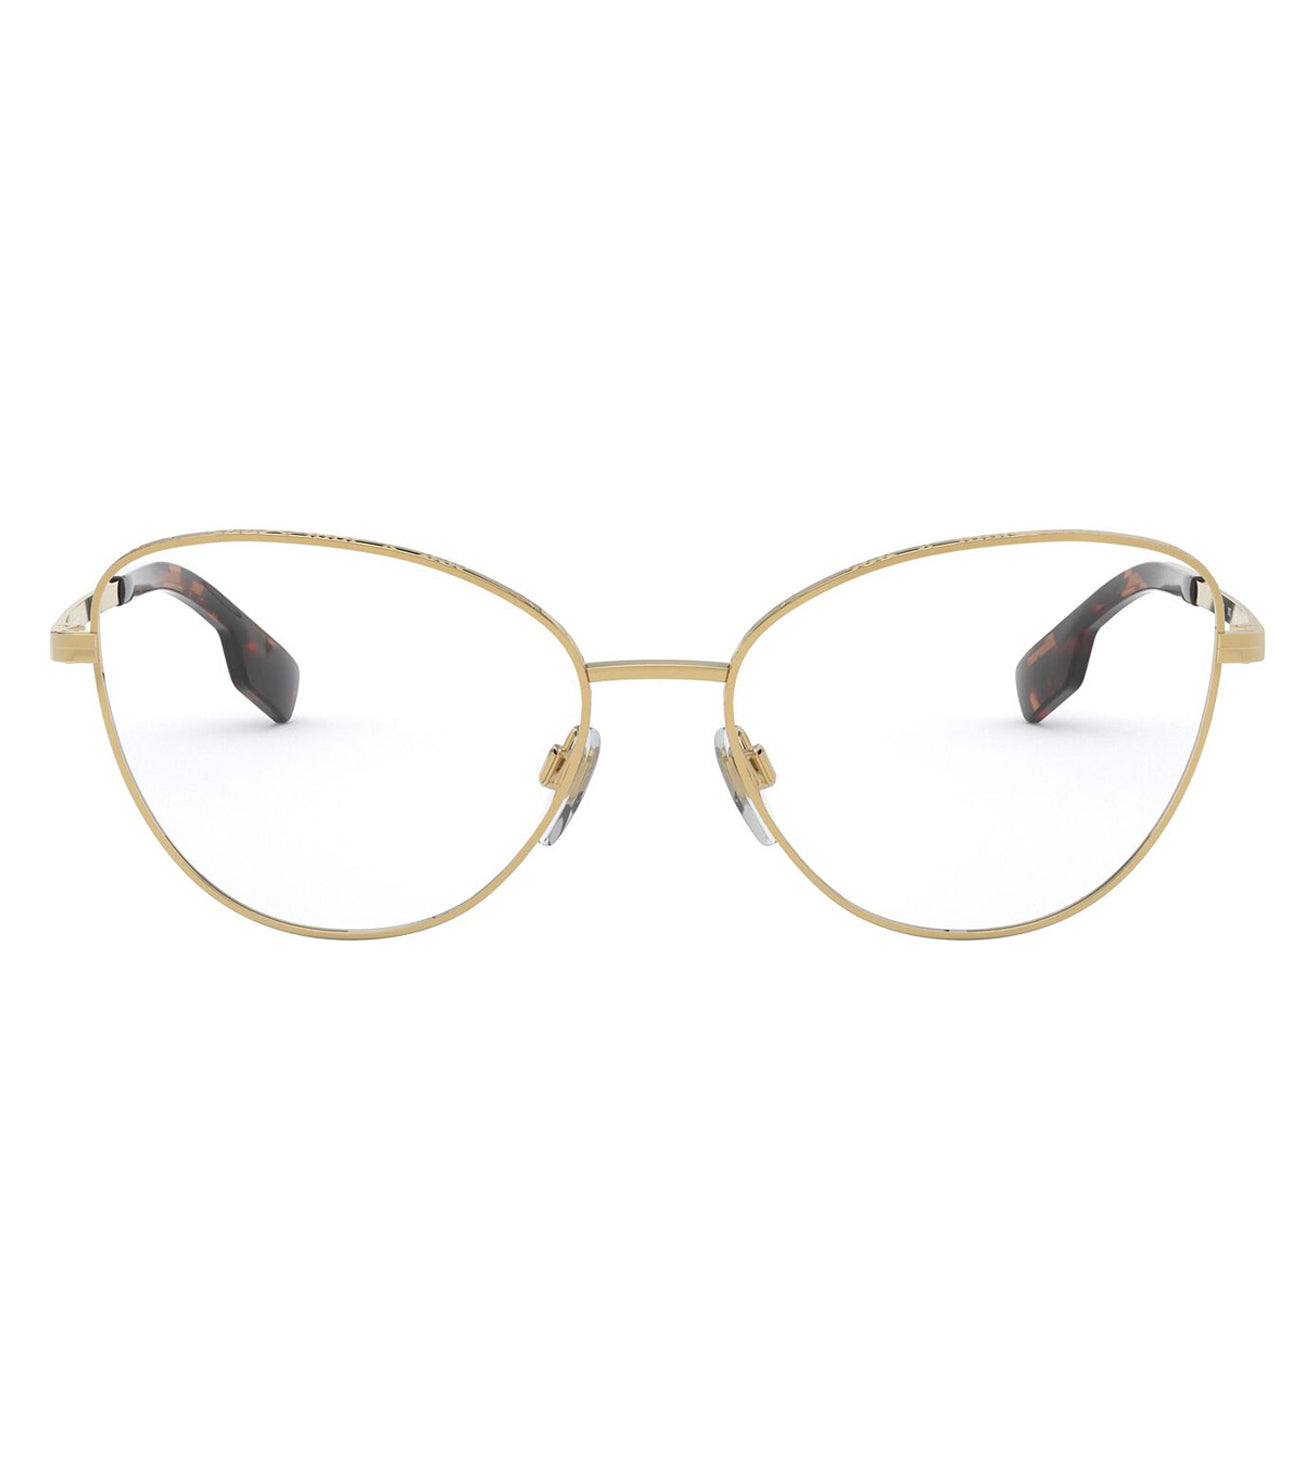 Burberry Women's Gold Cat-eye Optical Frames